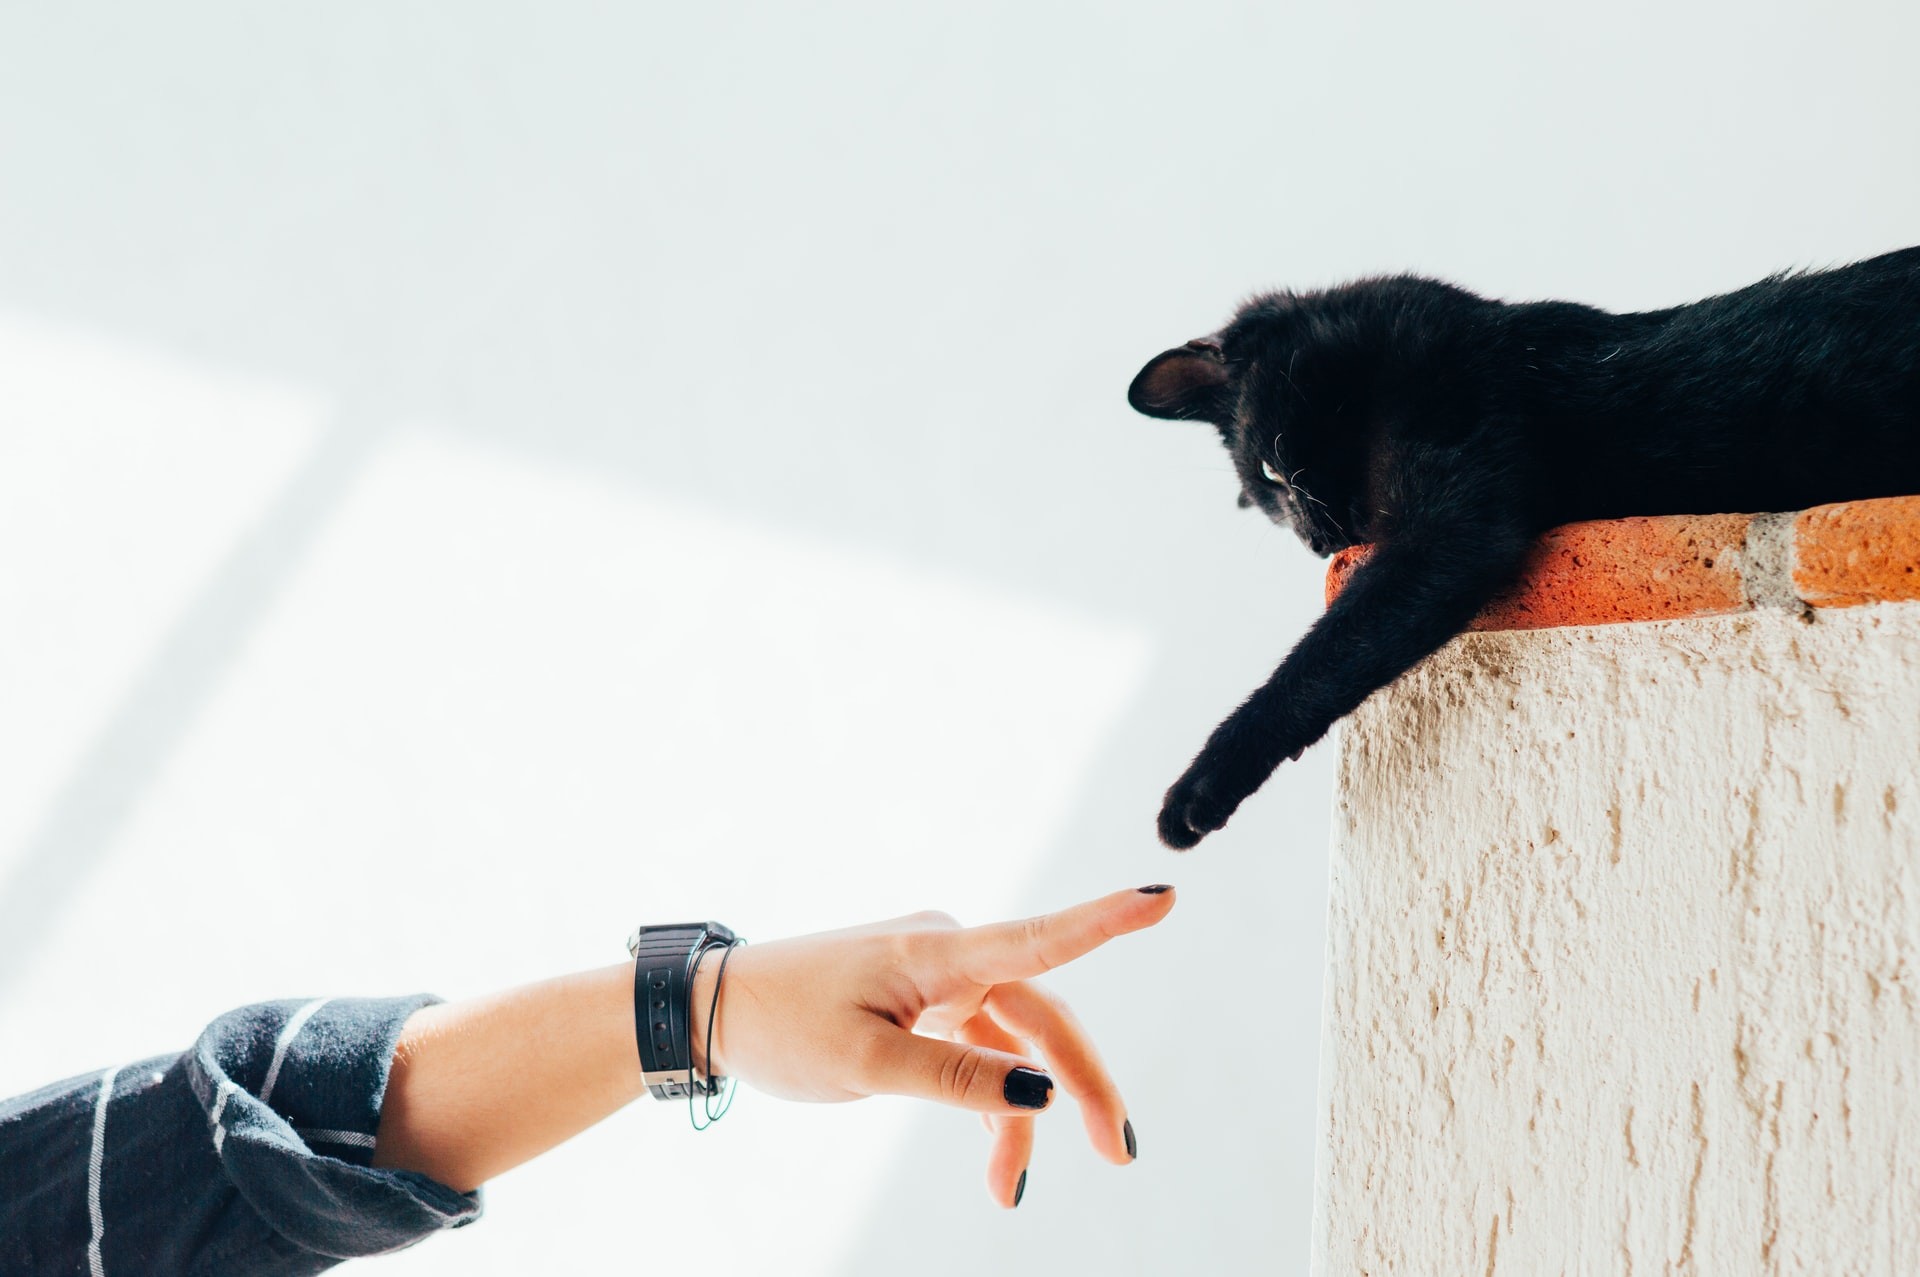 Os gatos possuem personalidades distintas e descobrir o que cada um gosta e não gosta depende da interação com o tutor  (Foto: Unsplash/Humberto Arellano/CreativeCommons)